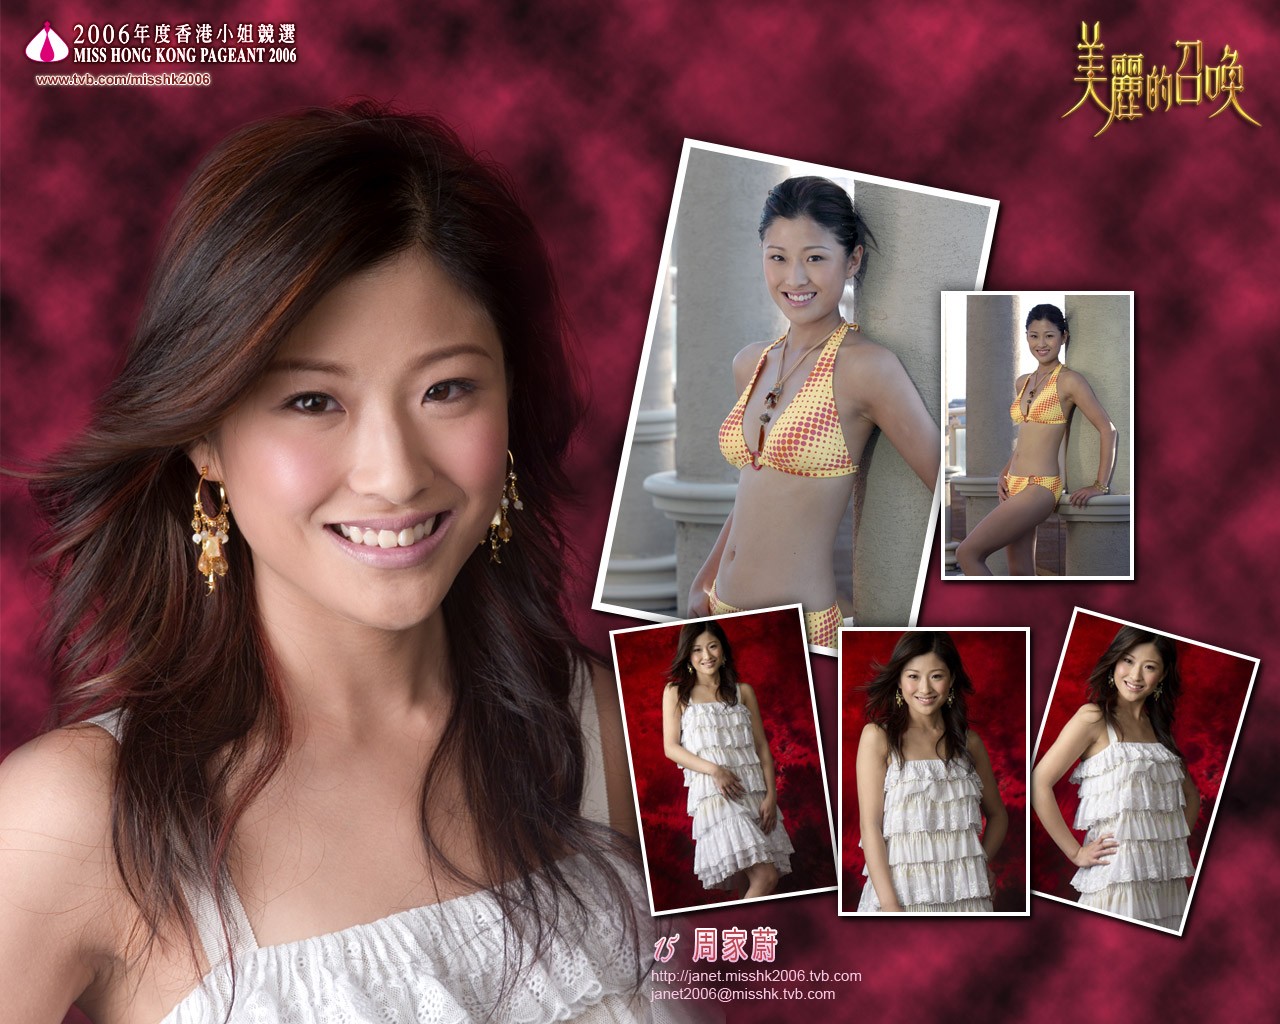 Miss Hong Kong 2006 Album #2 - 1280x1024